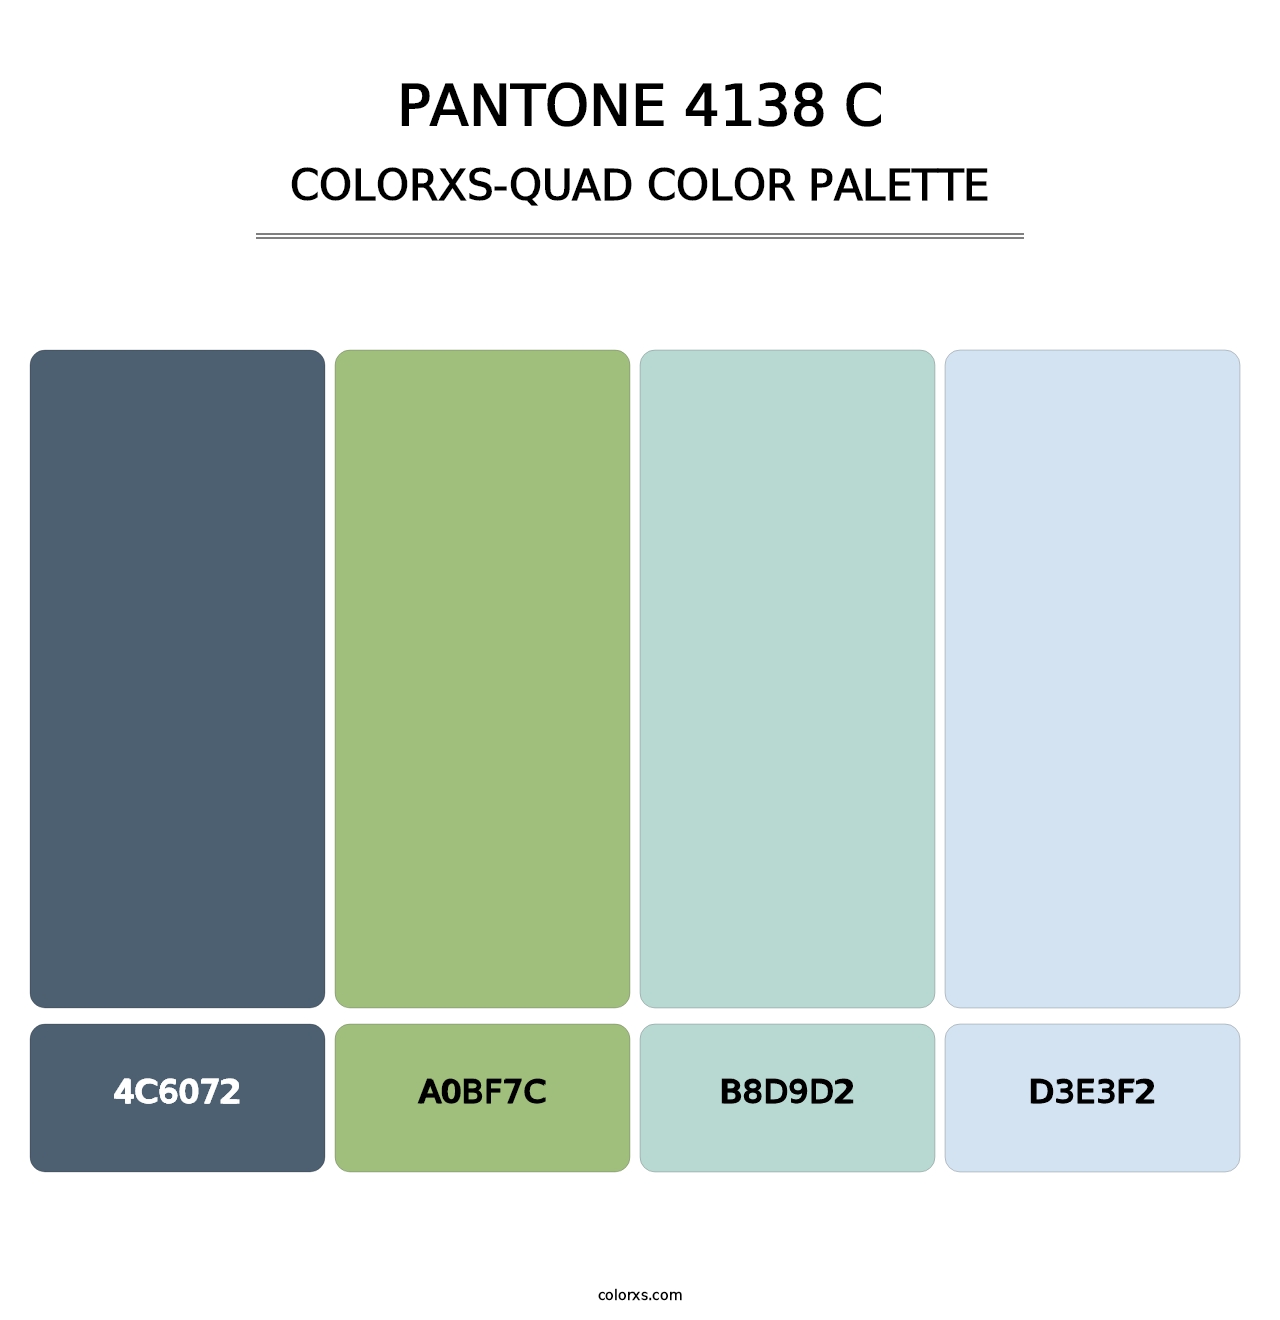 PANTONE 4138 C - Colorxs Quad Palette